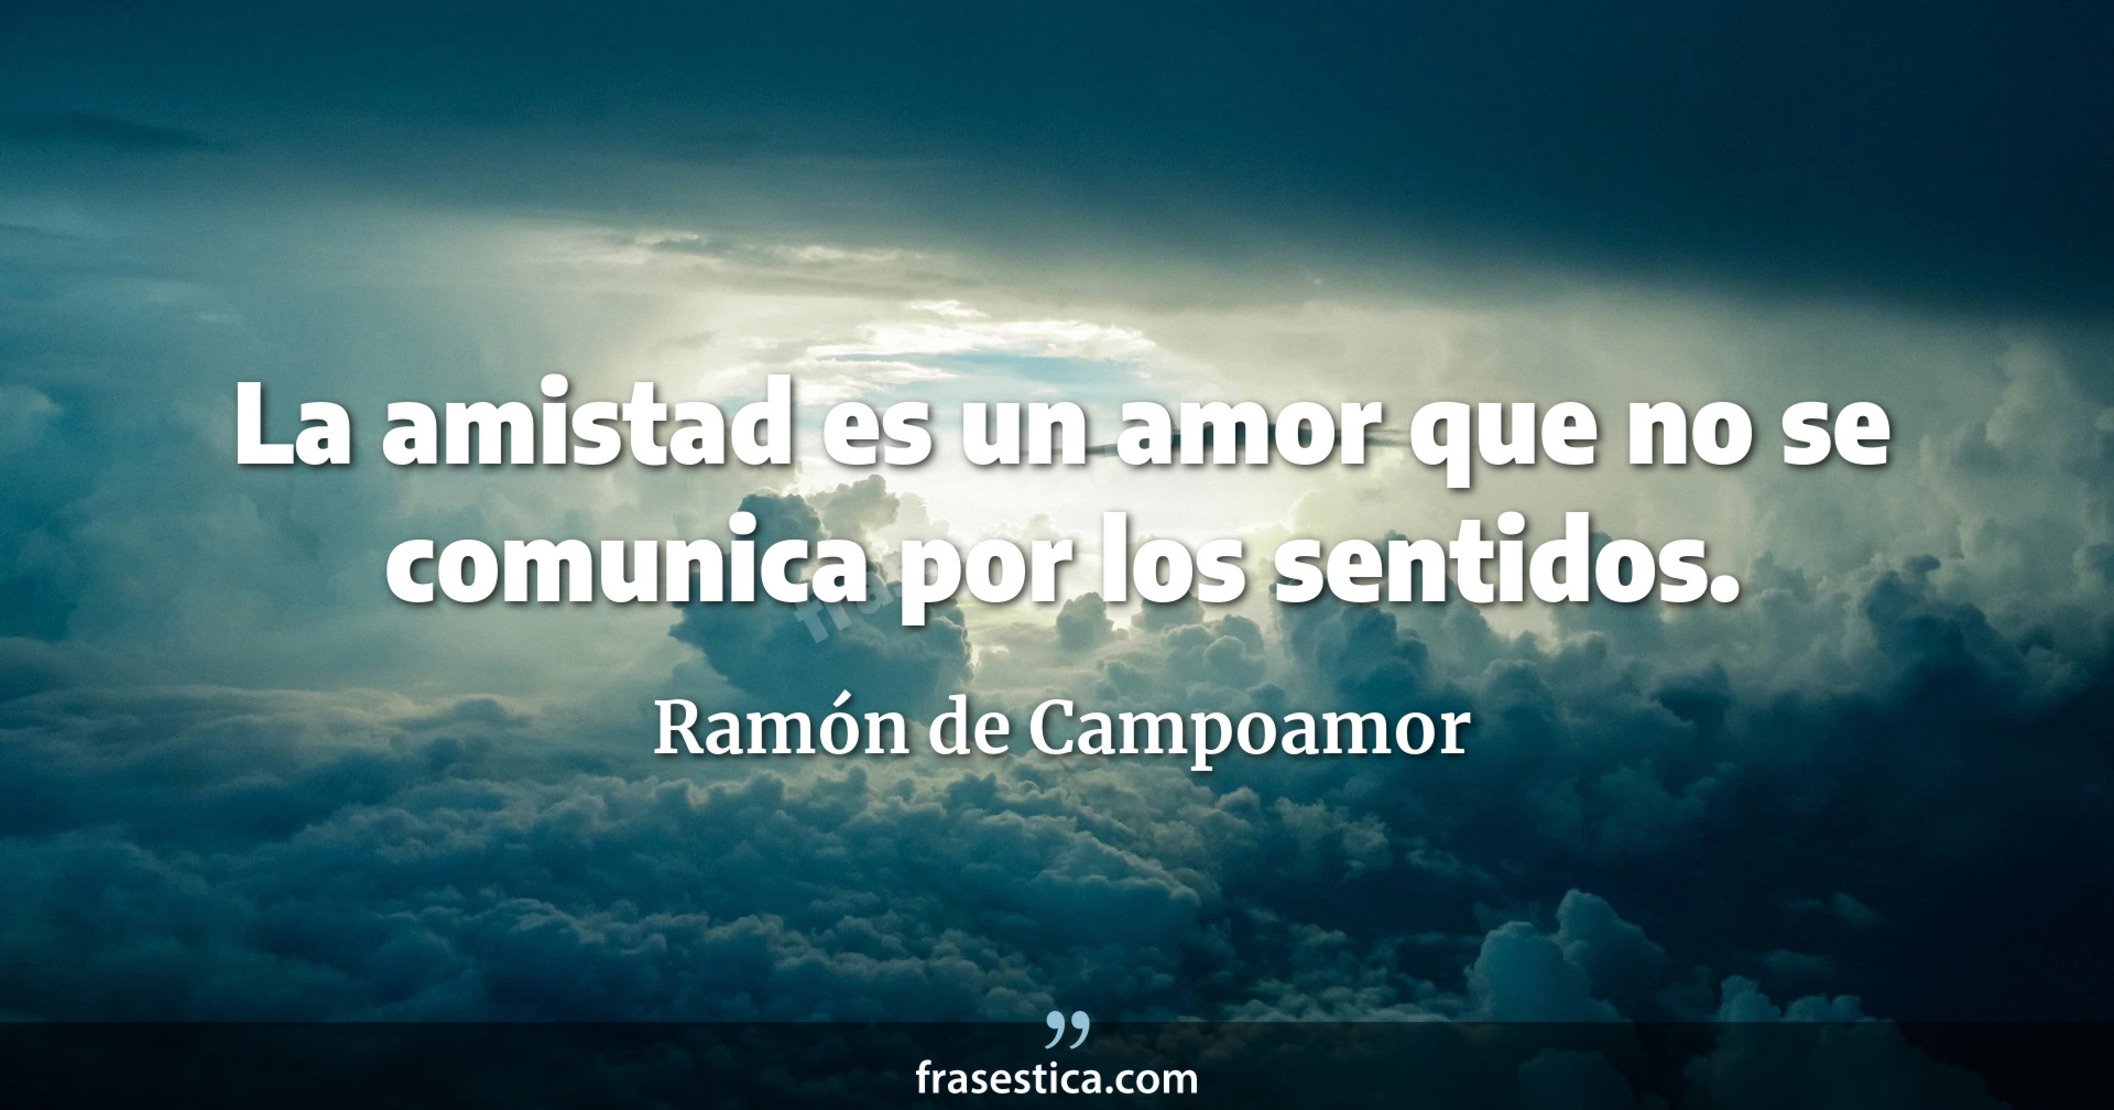 La amistad es un amor que no se comunica por los sentidos. - Ramón de Campoamor